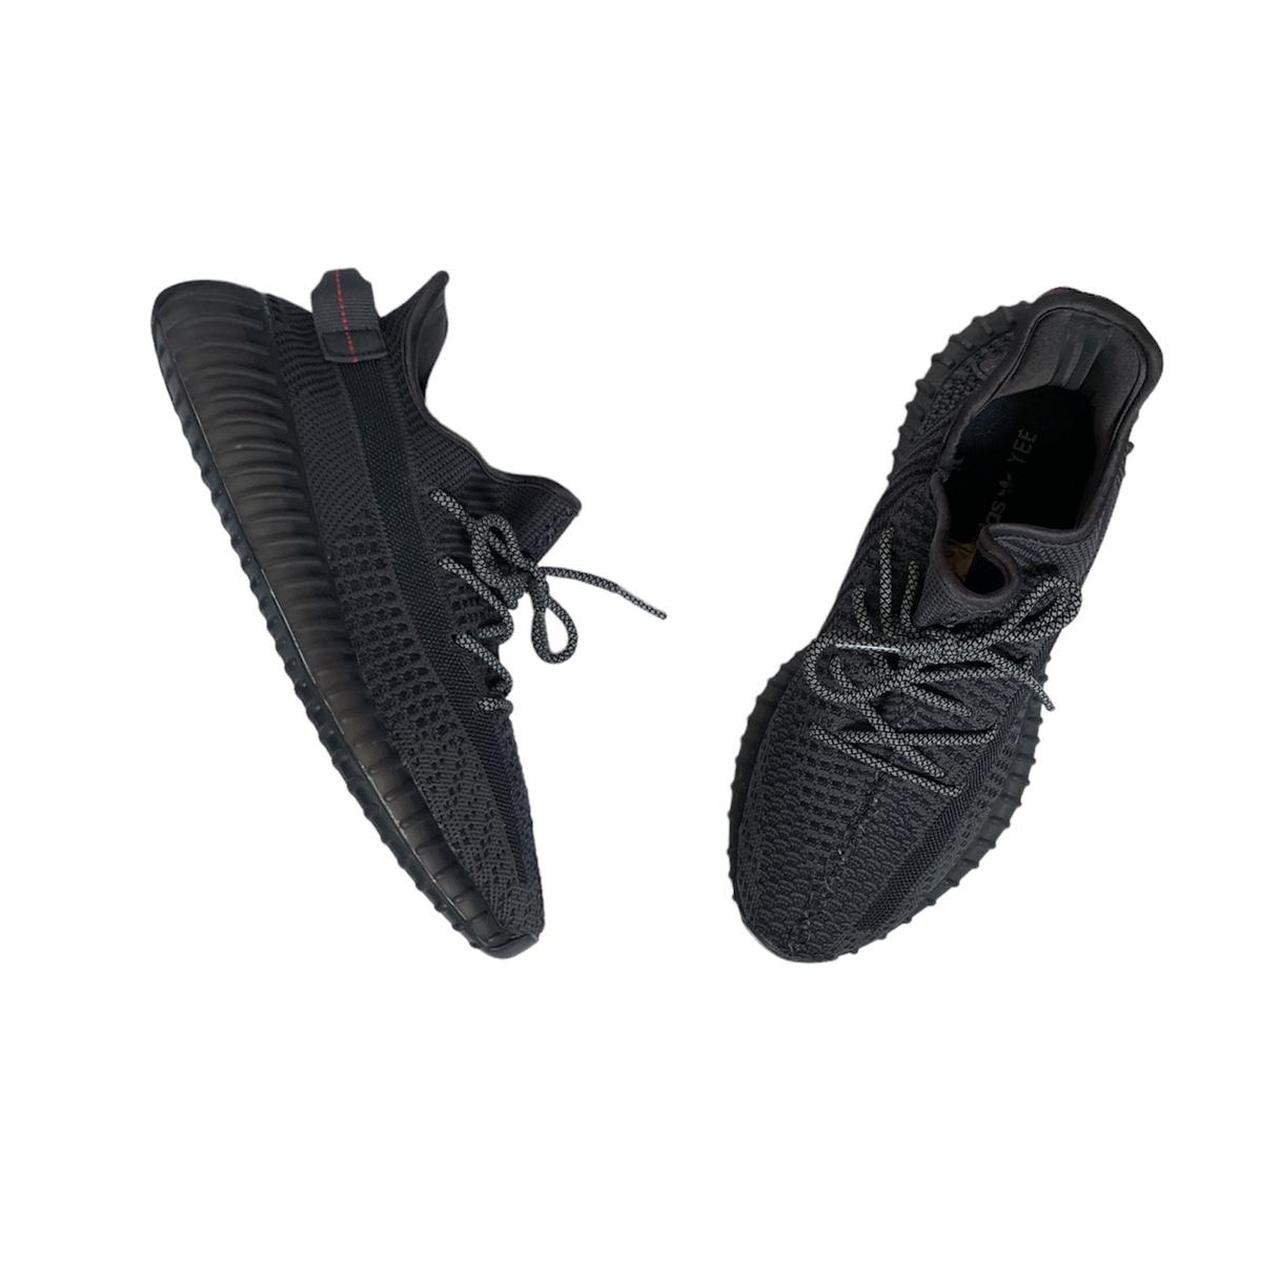 Adidas Mens Yeezy Boost 350 V2 Shoes, Black / 10 M